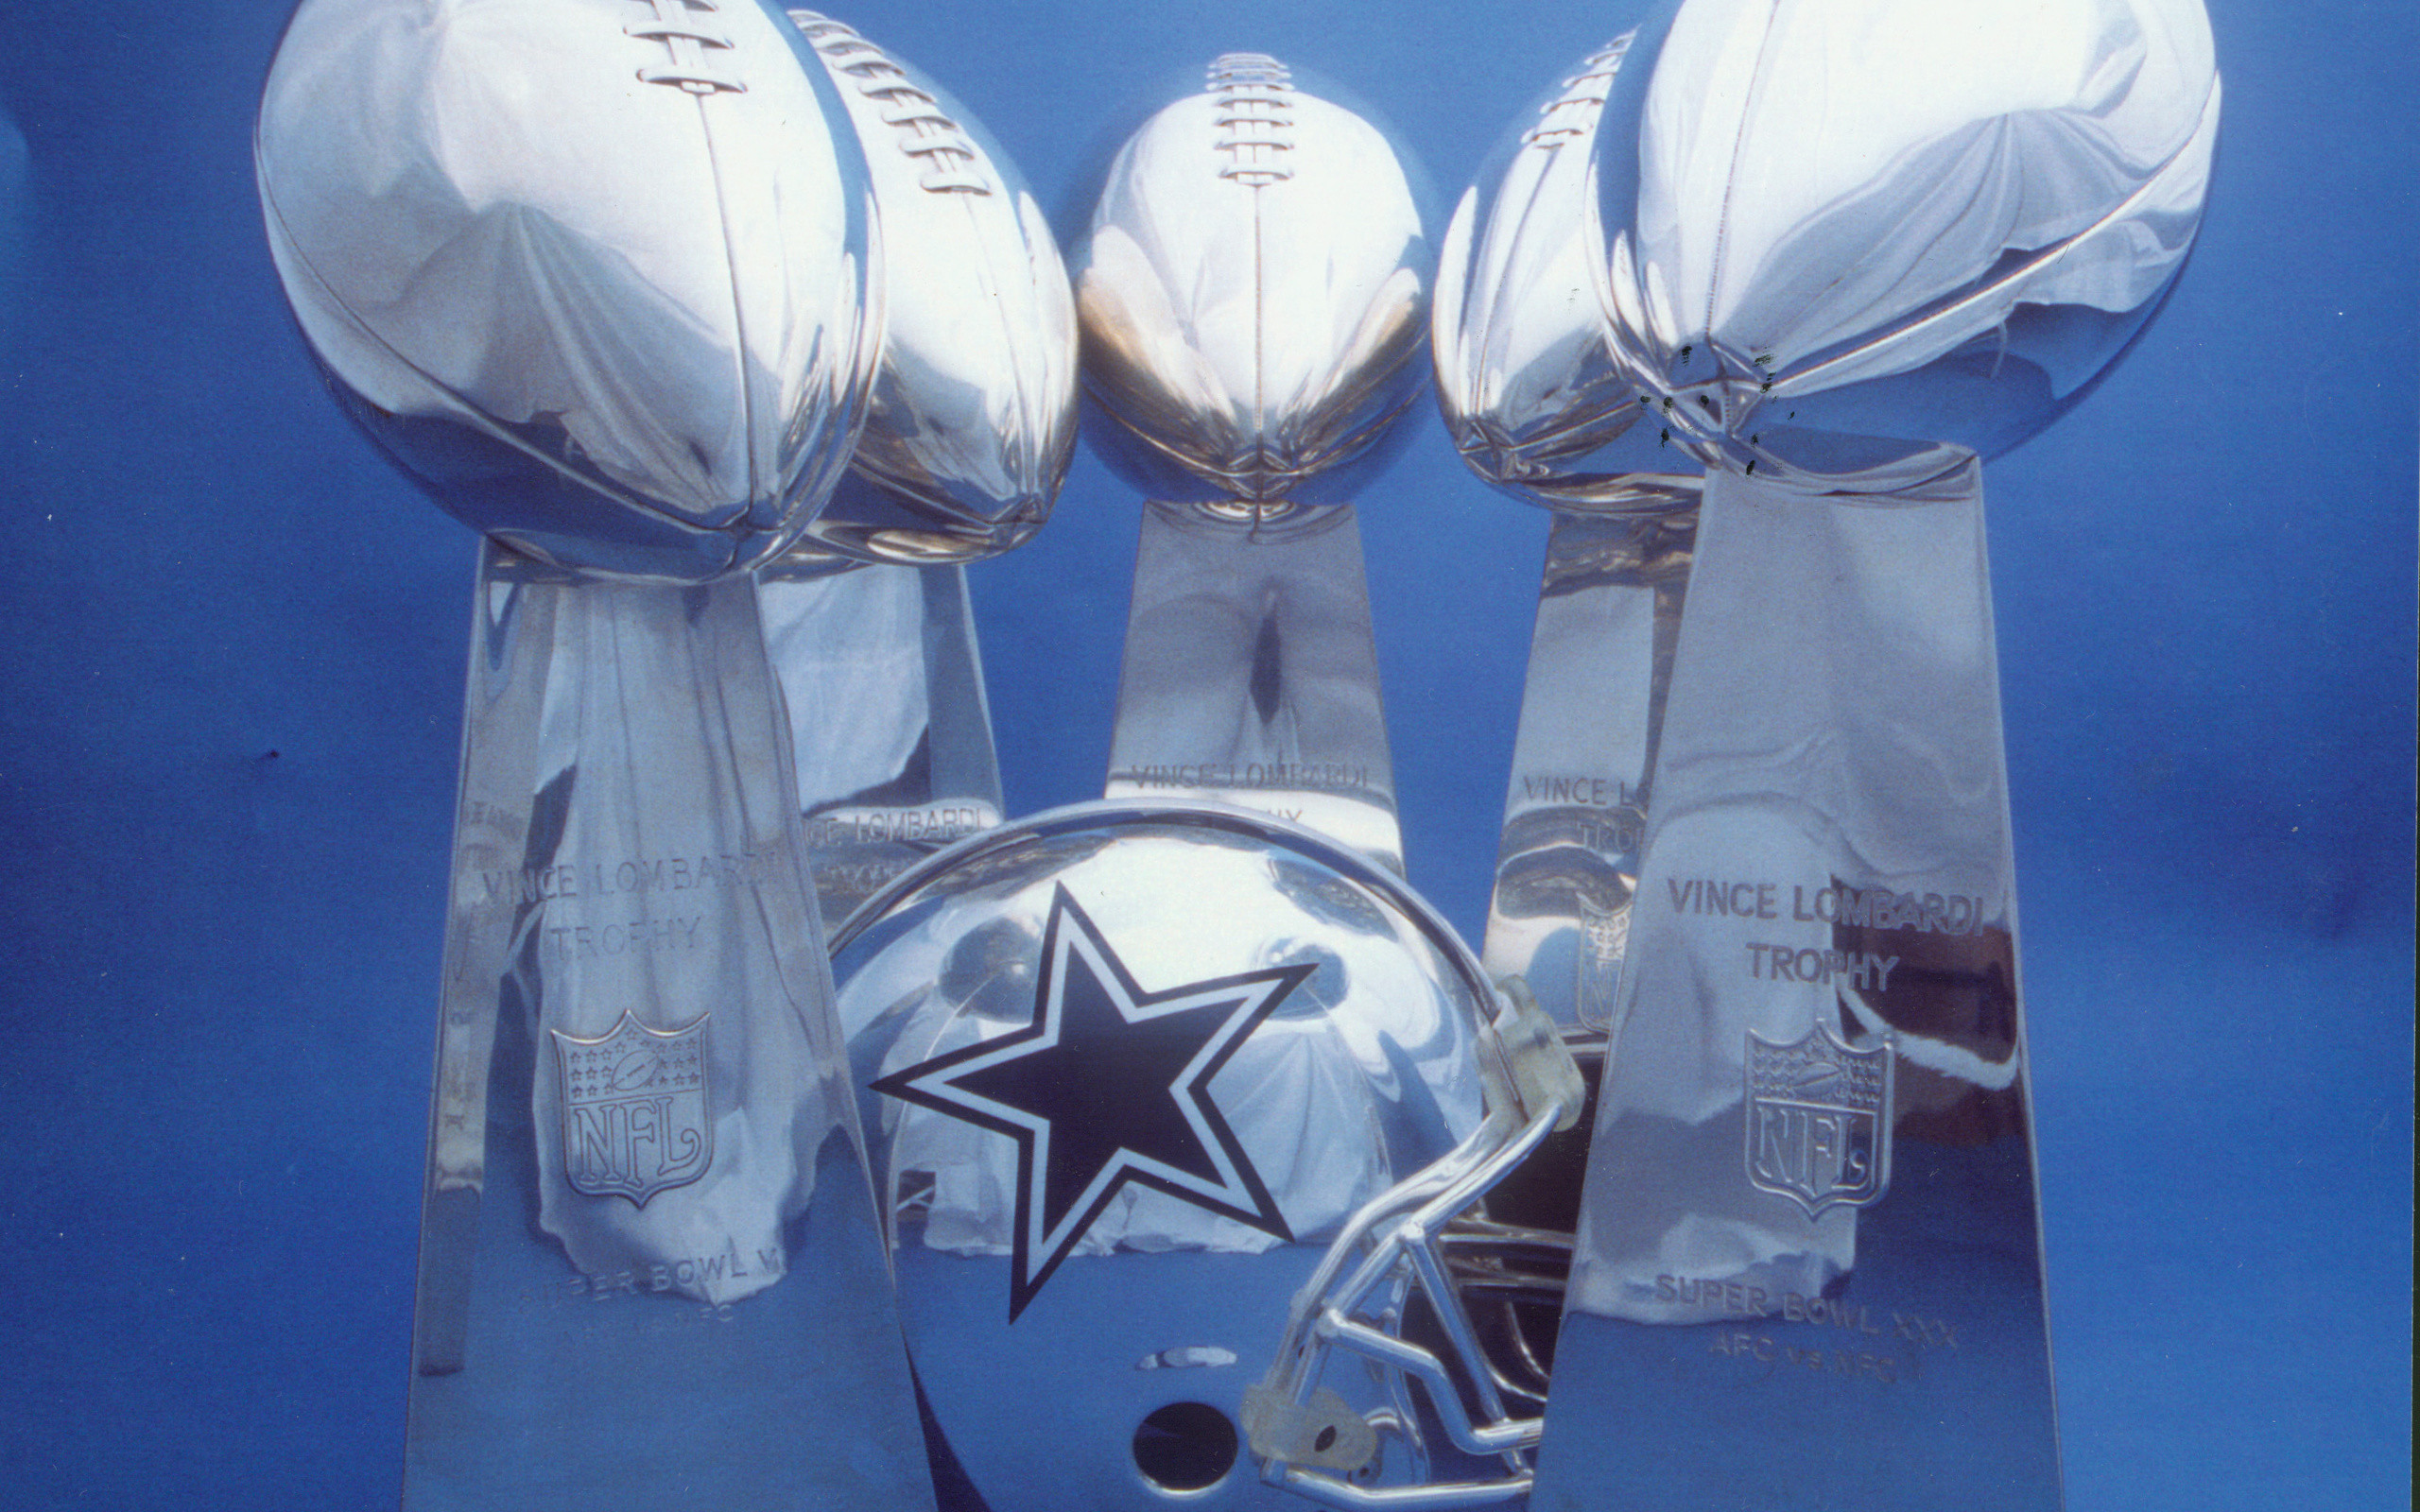 2560x1600 Dallas Cowboys Wallpaper for iPhone 2560Ã1600